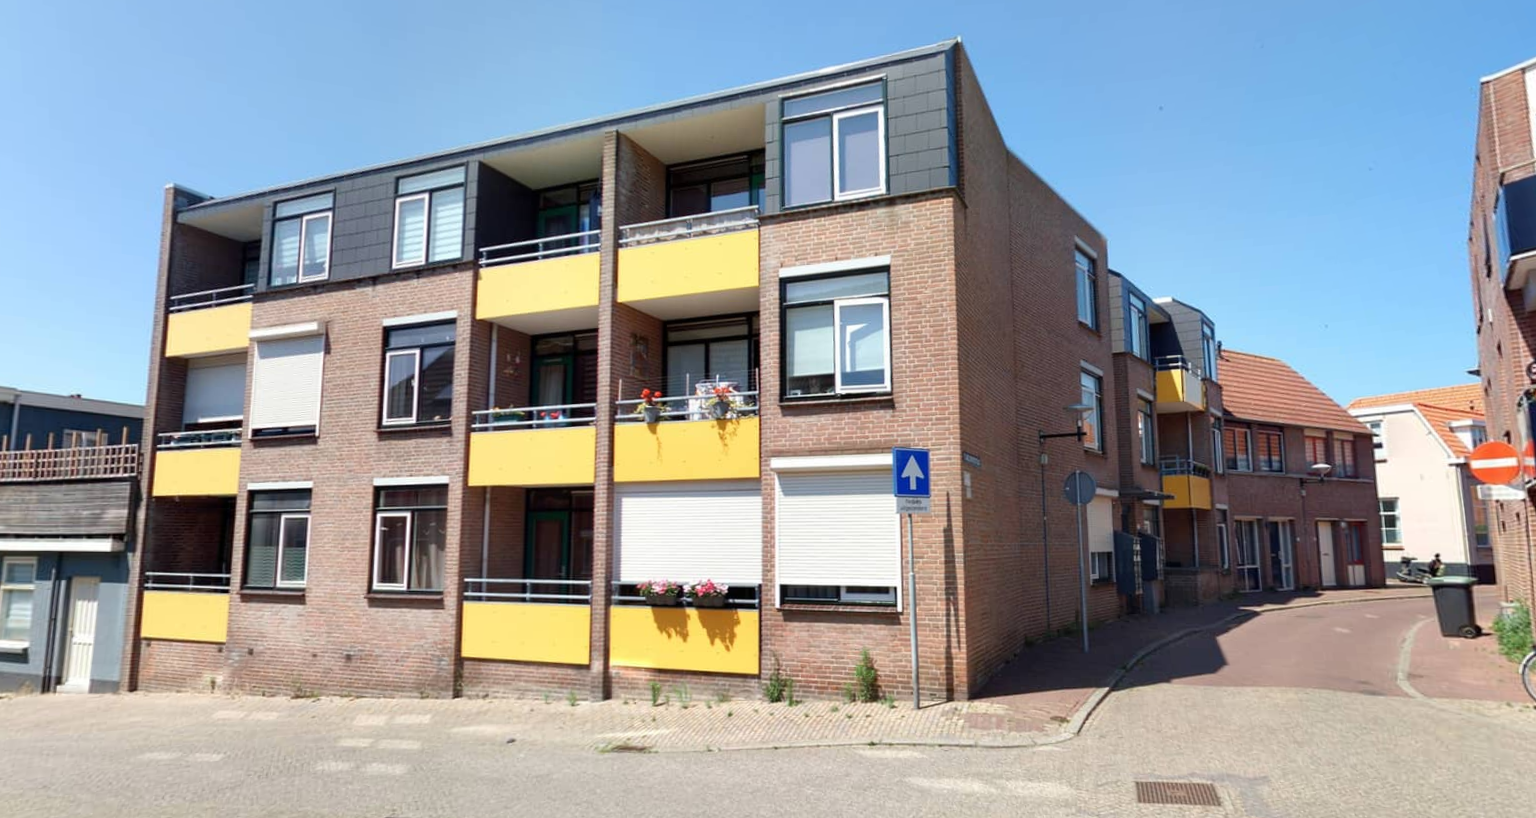 Fluwelenbroekstraat 11, 4611 JS Bergen op Zoom, Nederland